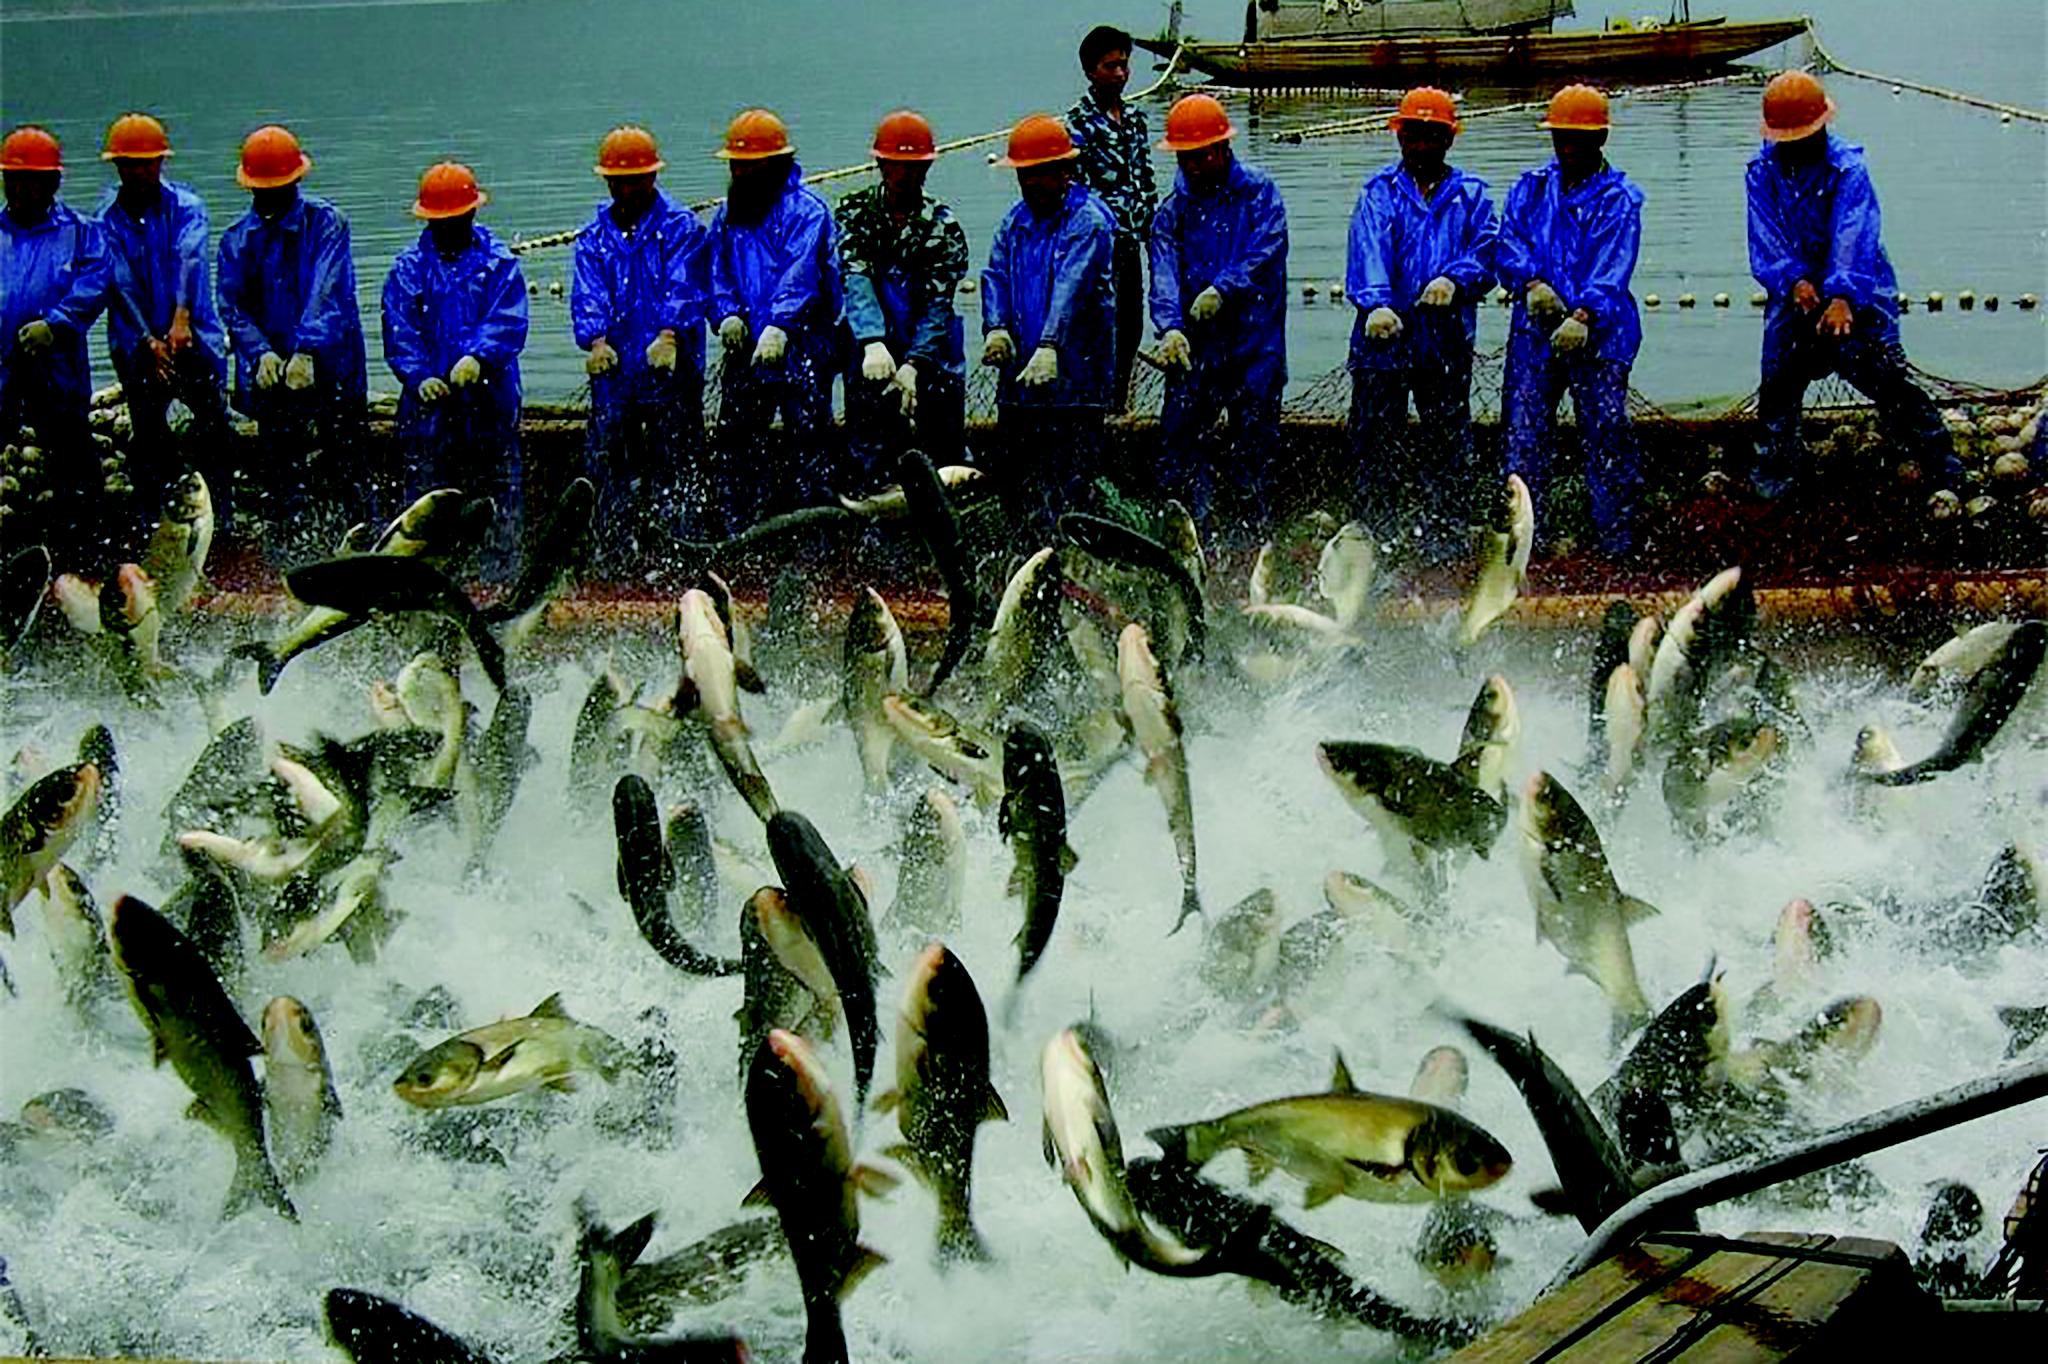 [数据分析师]女分析师:多番集资增强实力 中国海洋捕捞看俏